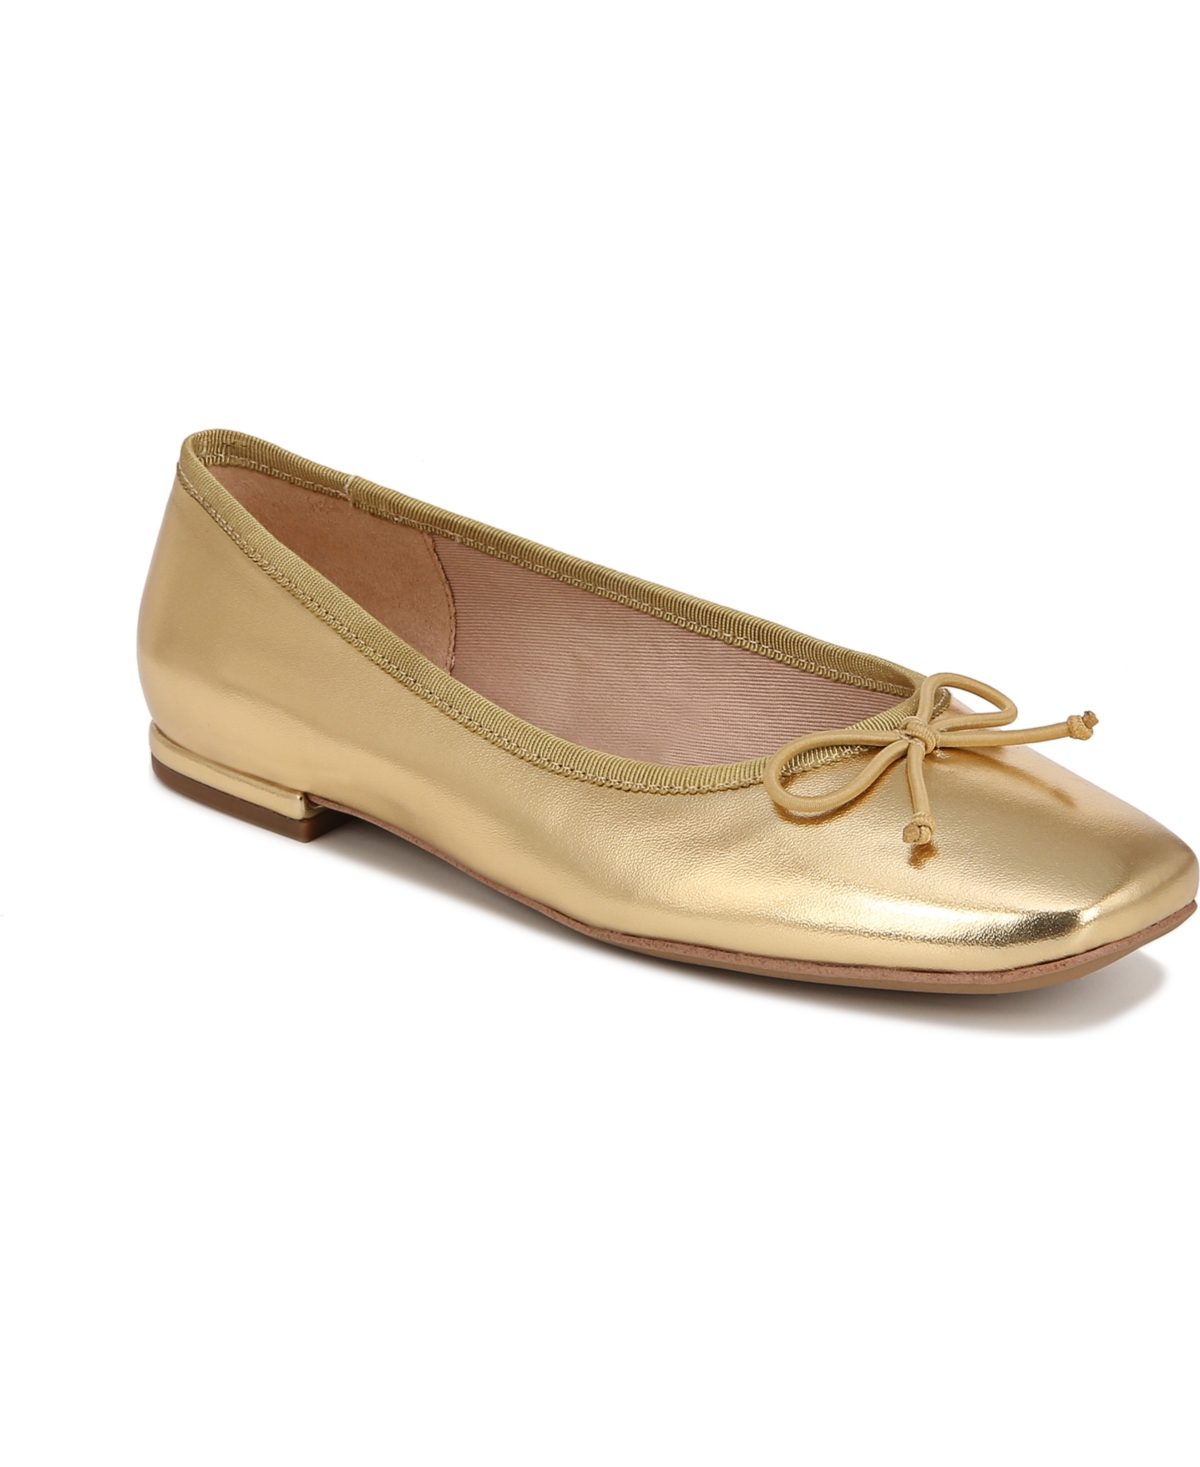 Women's Abigail Square Toe Ballet Flats - Gold Faux Leather